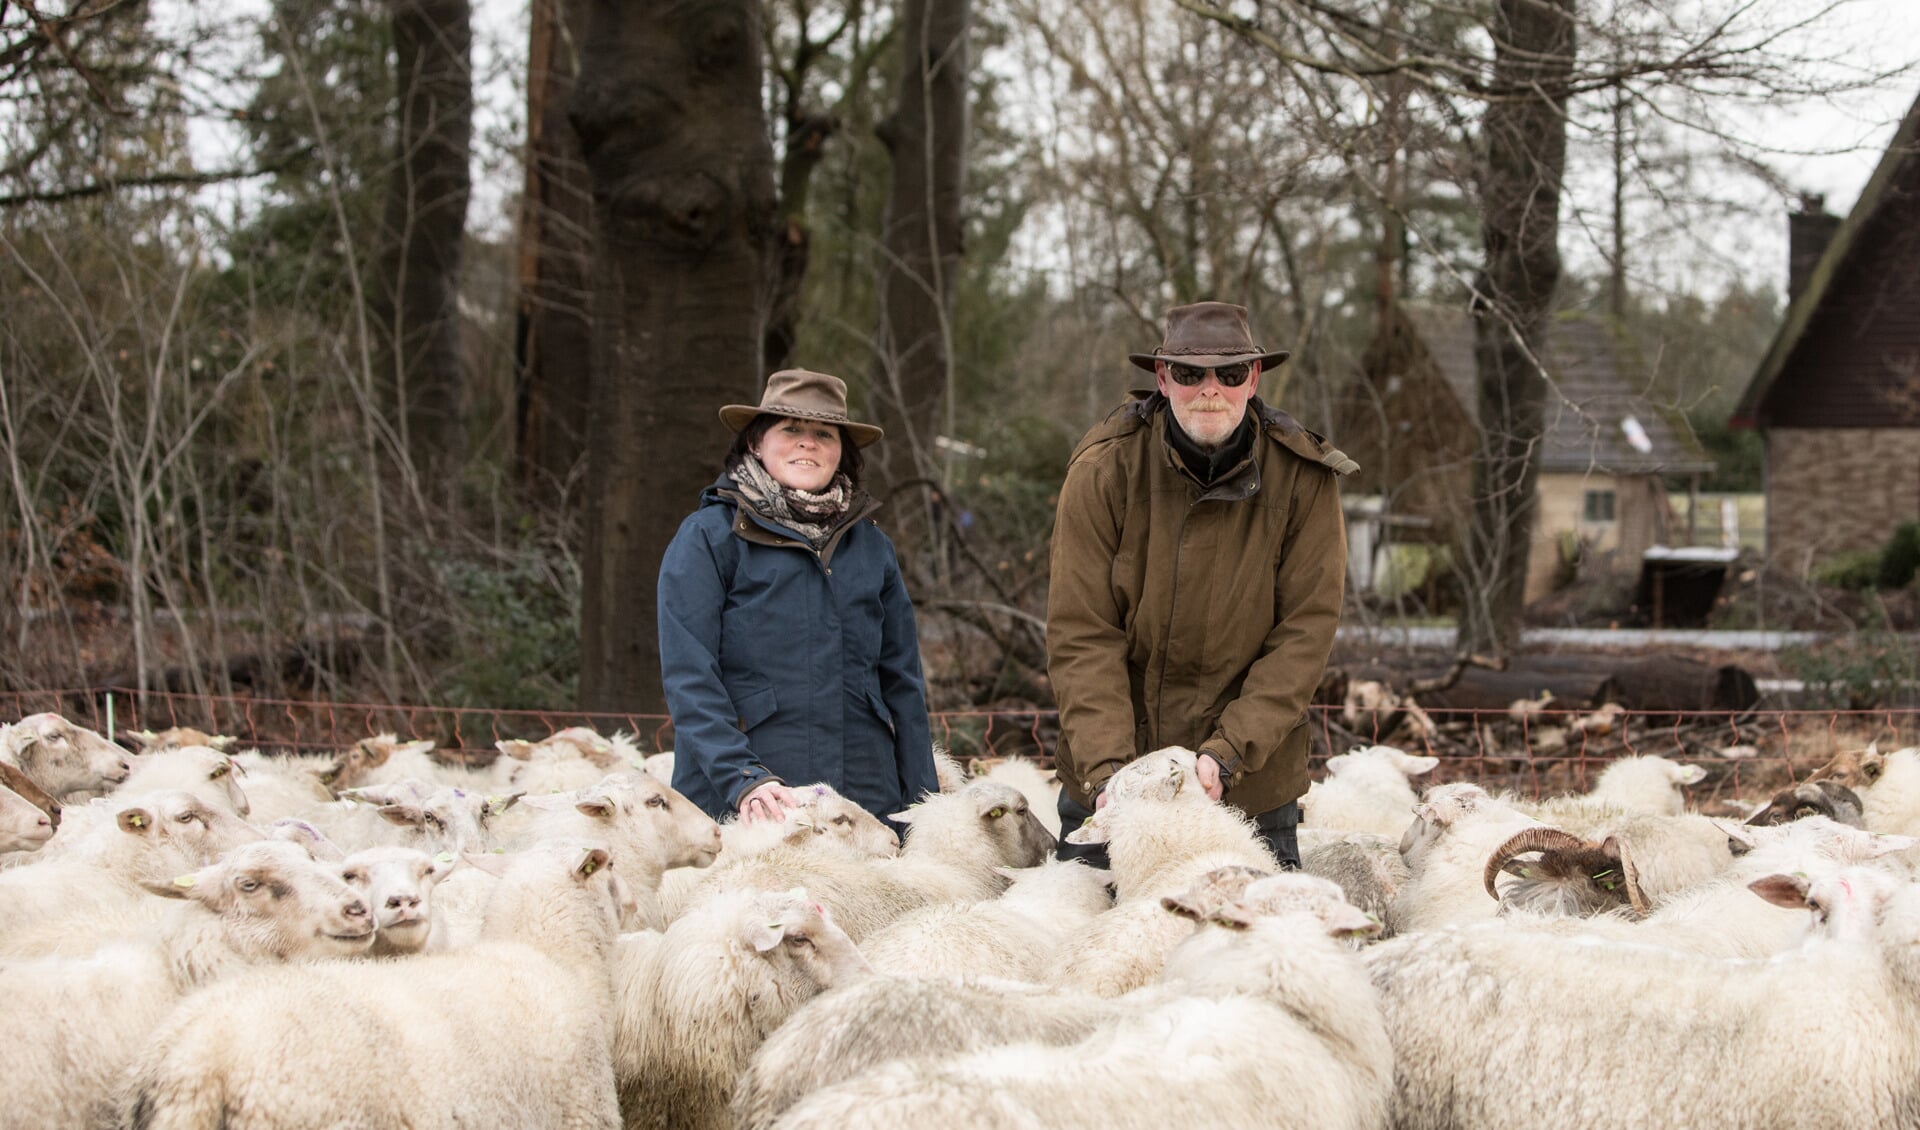 De zoektocht naar de perfecte graasplek voor de 260 schapen gaat nog even door.